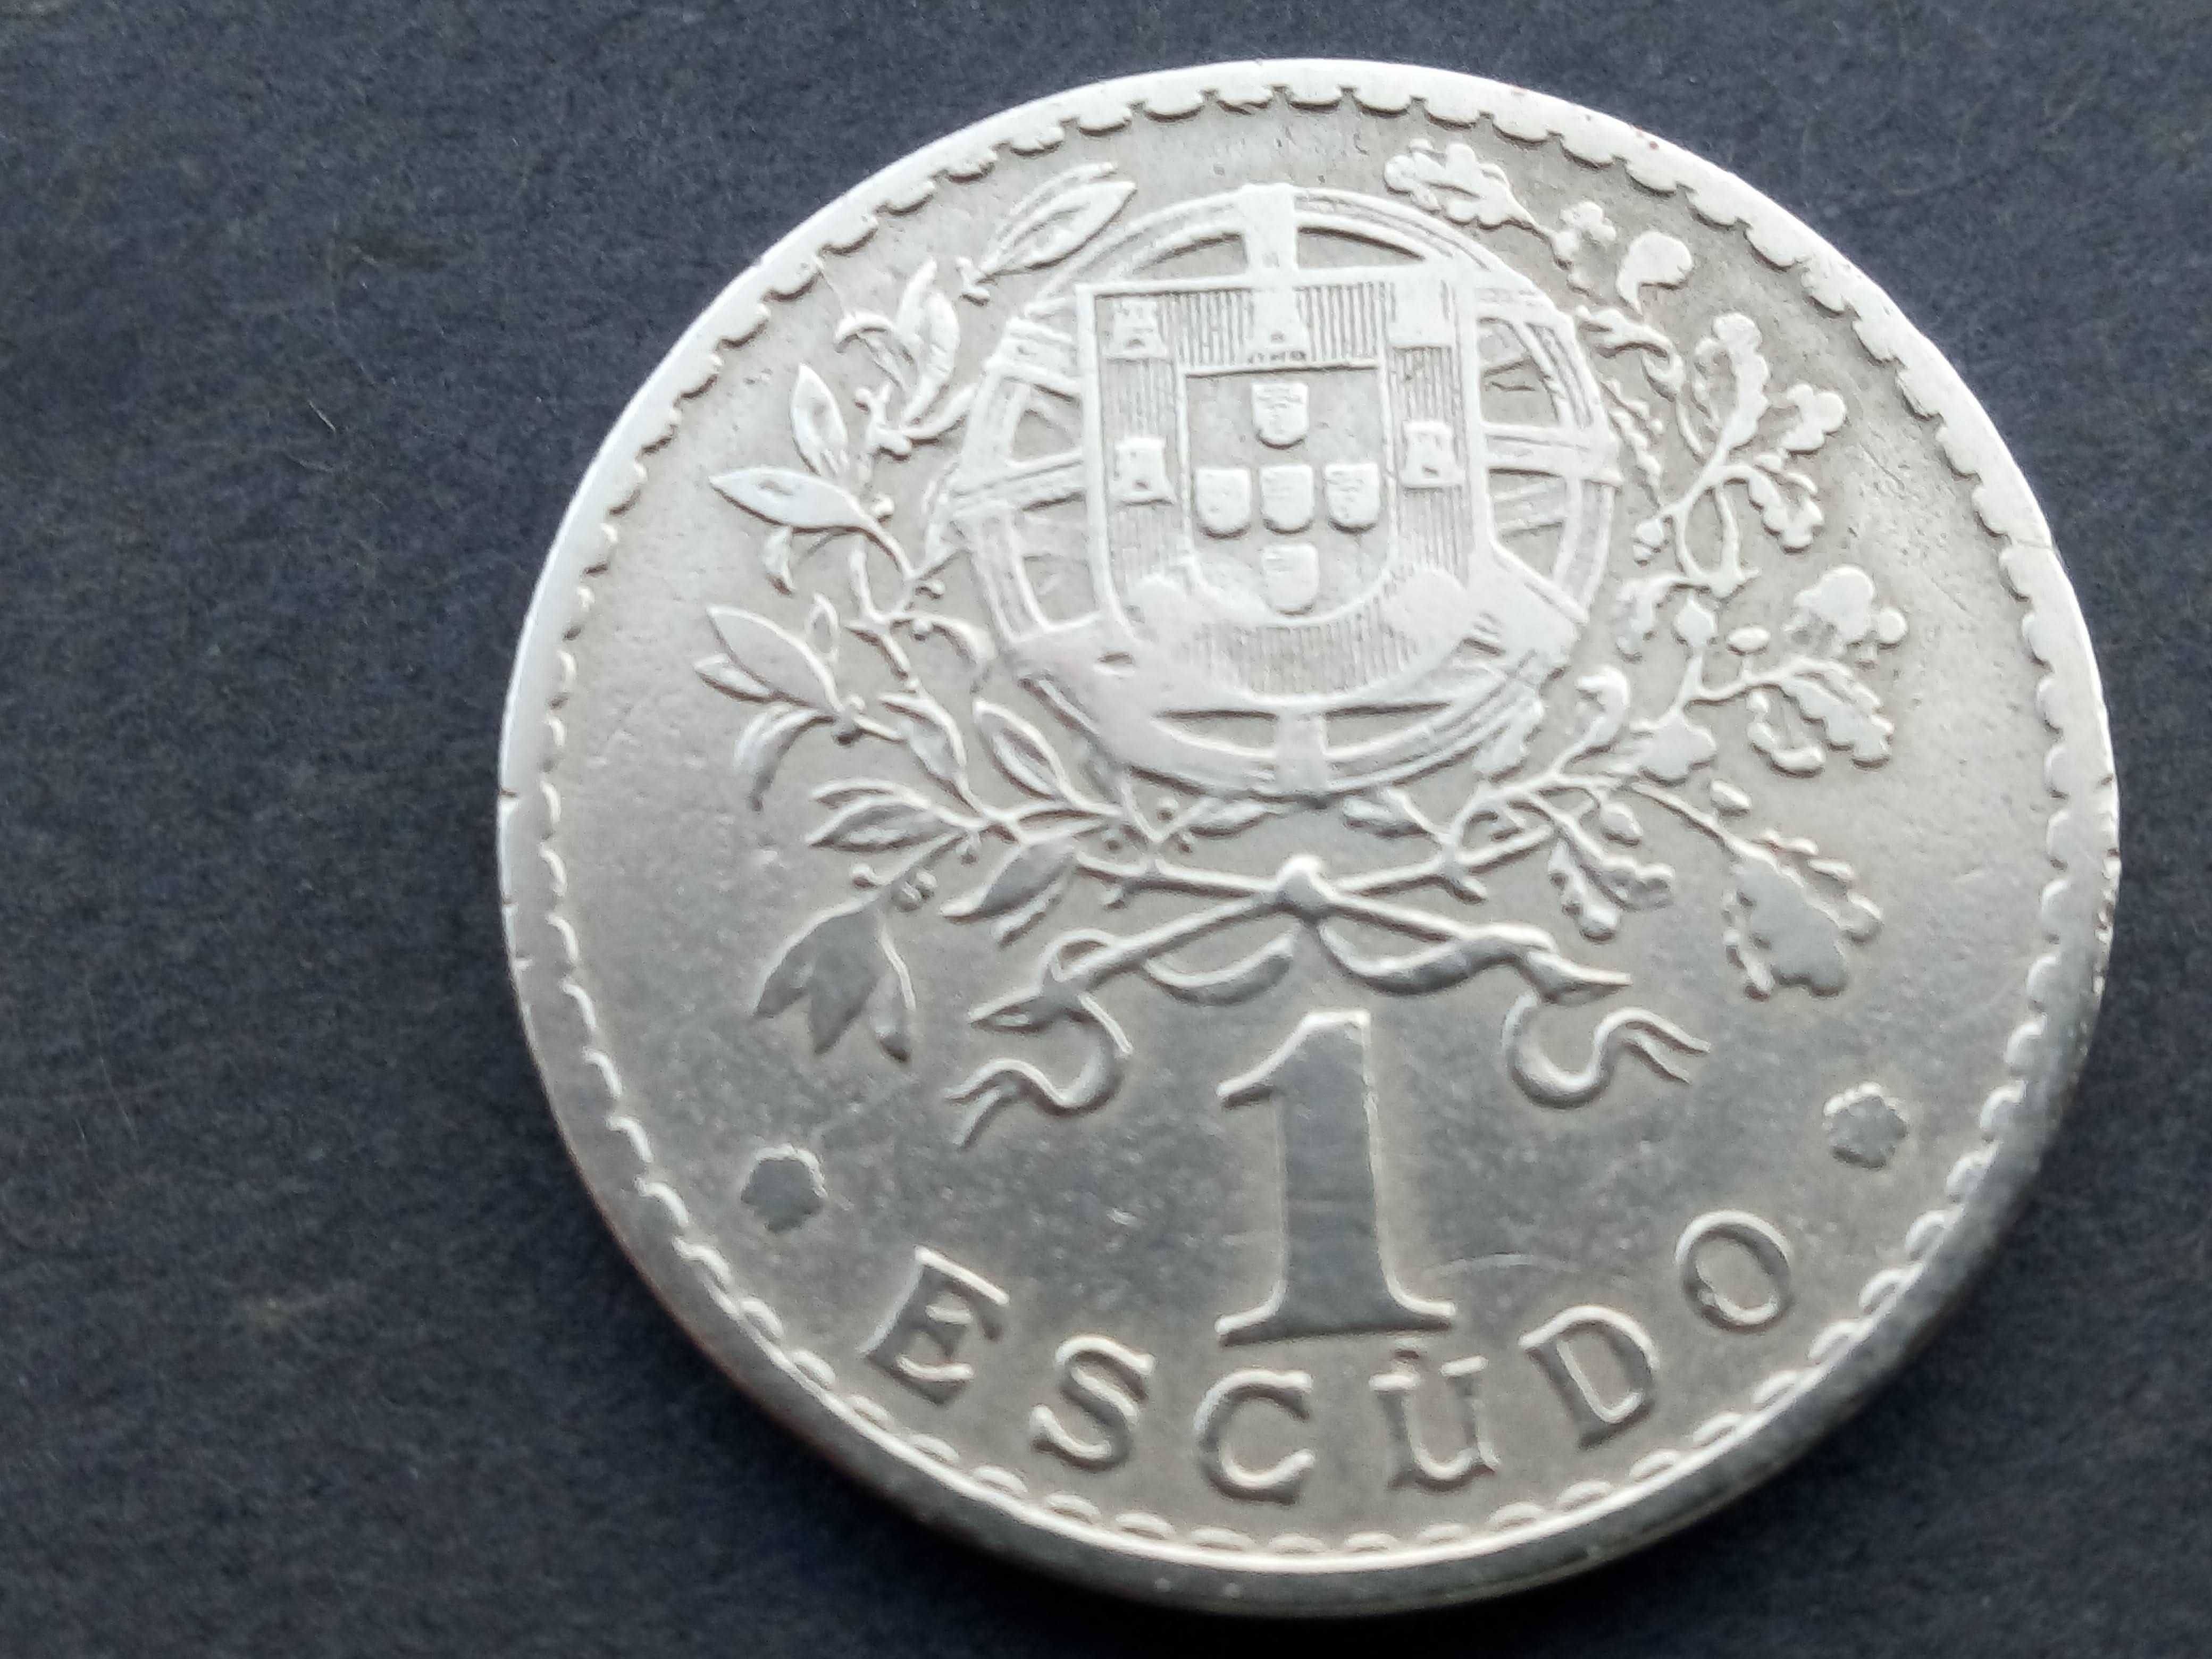 moeda de 1$00 1931 alpaca, muito rara neste estado ver foto